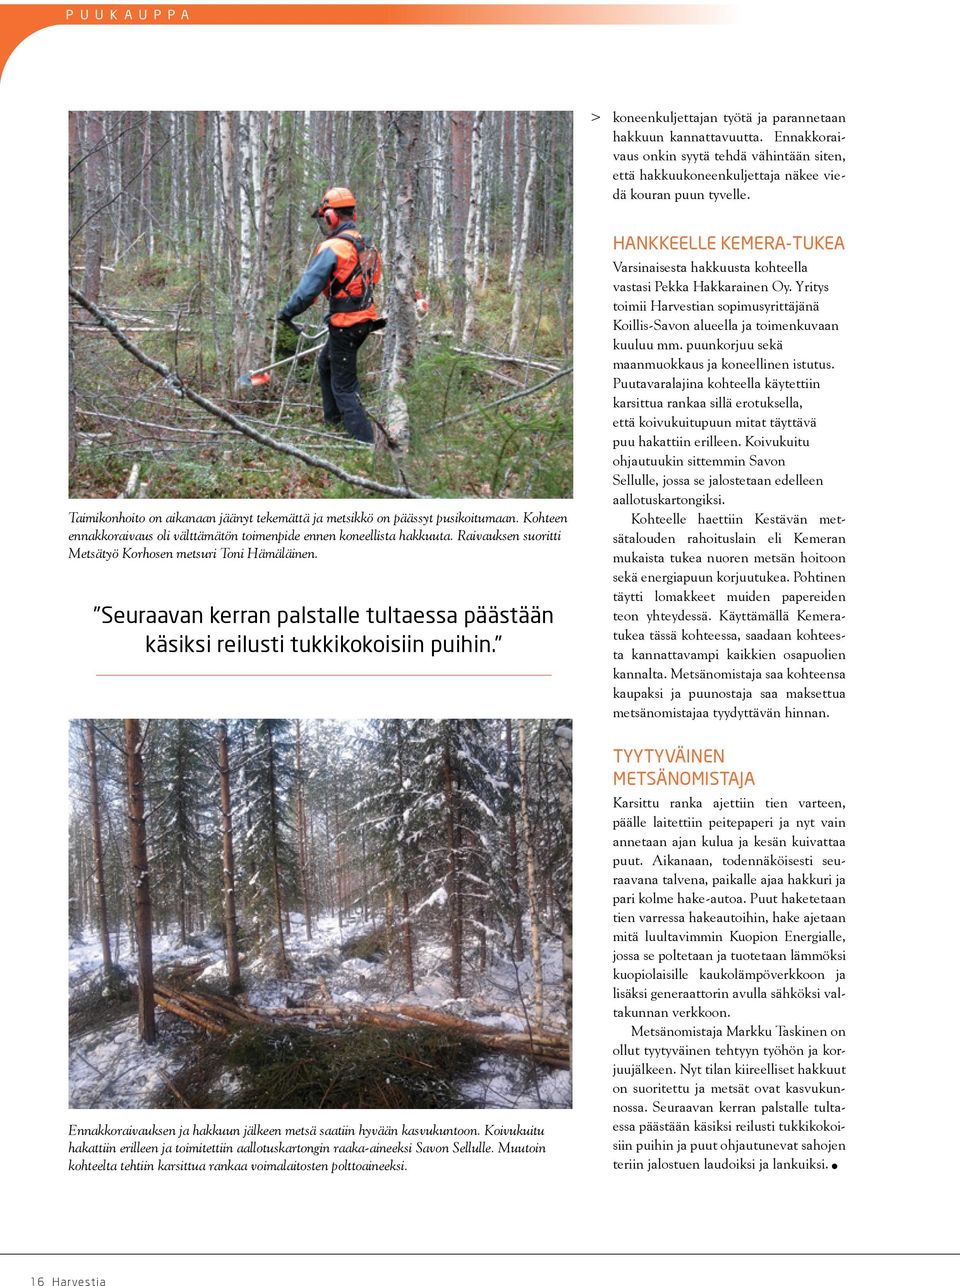 Raivauksen suoritti Metsätyö Korhosen metsuri Toni Hämäläinen. Seuraavan kerran palstalle tultaessa päästään käsiksi reilusti tukkikokoisiin puihin.